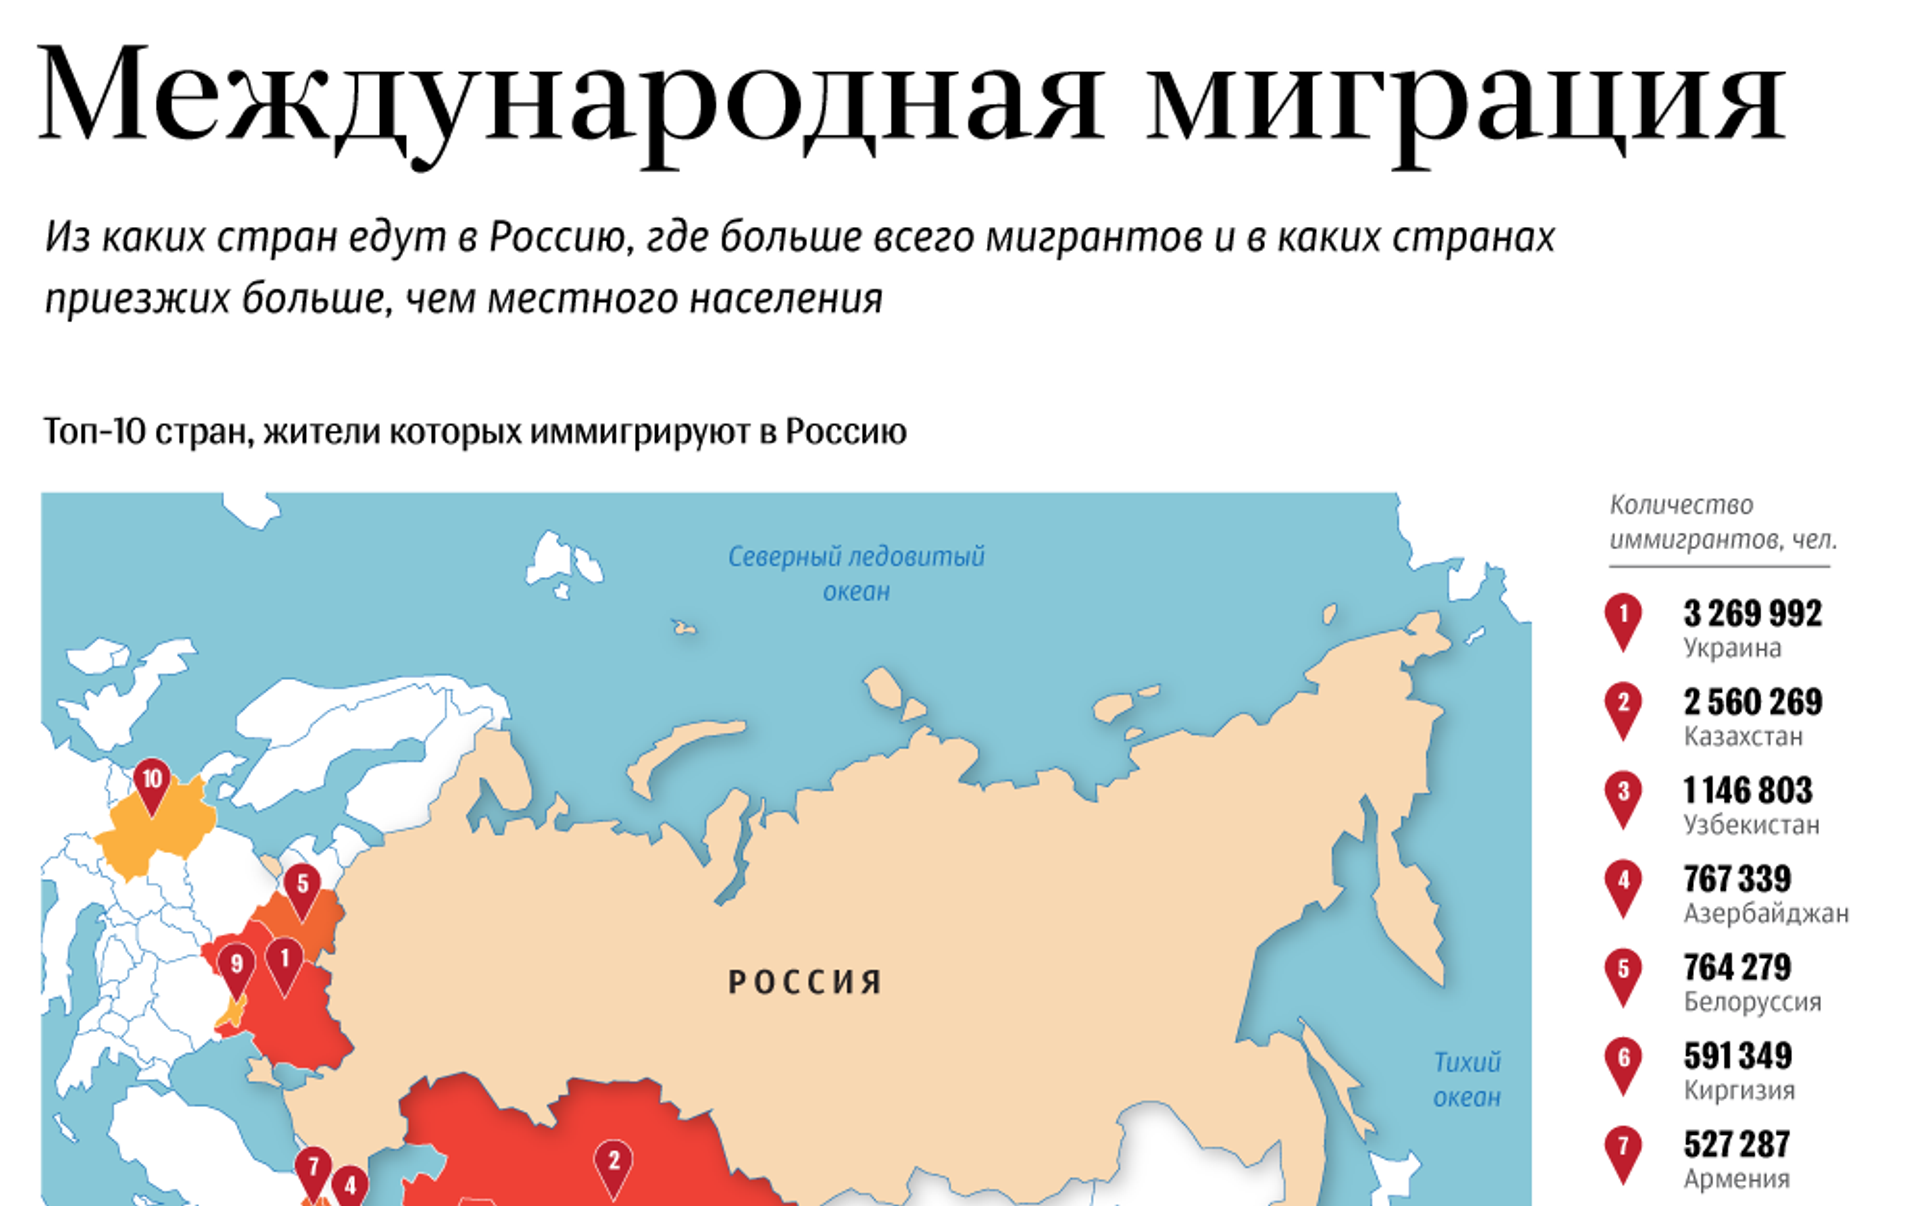 Миграция в России. Какие страны мигрируют в Россию. Международная миграция в Росси. Миграция в России инфографика.